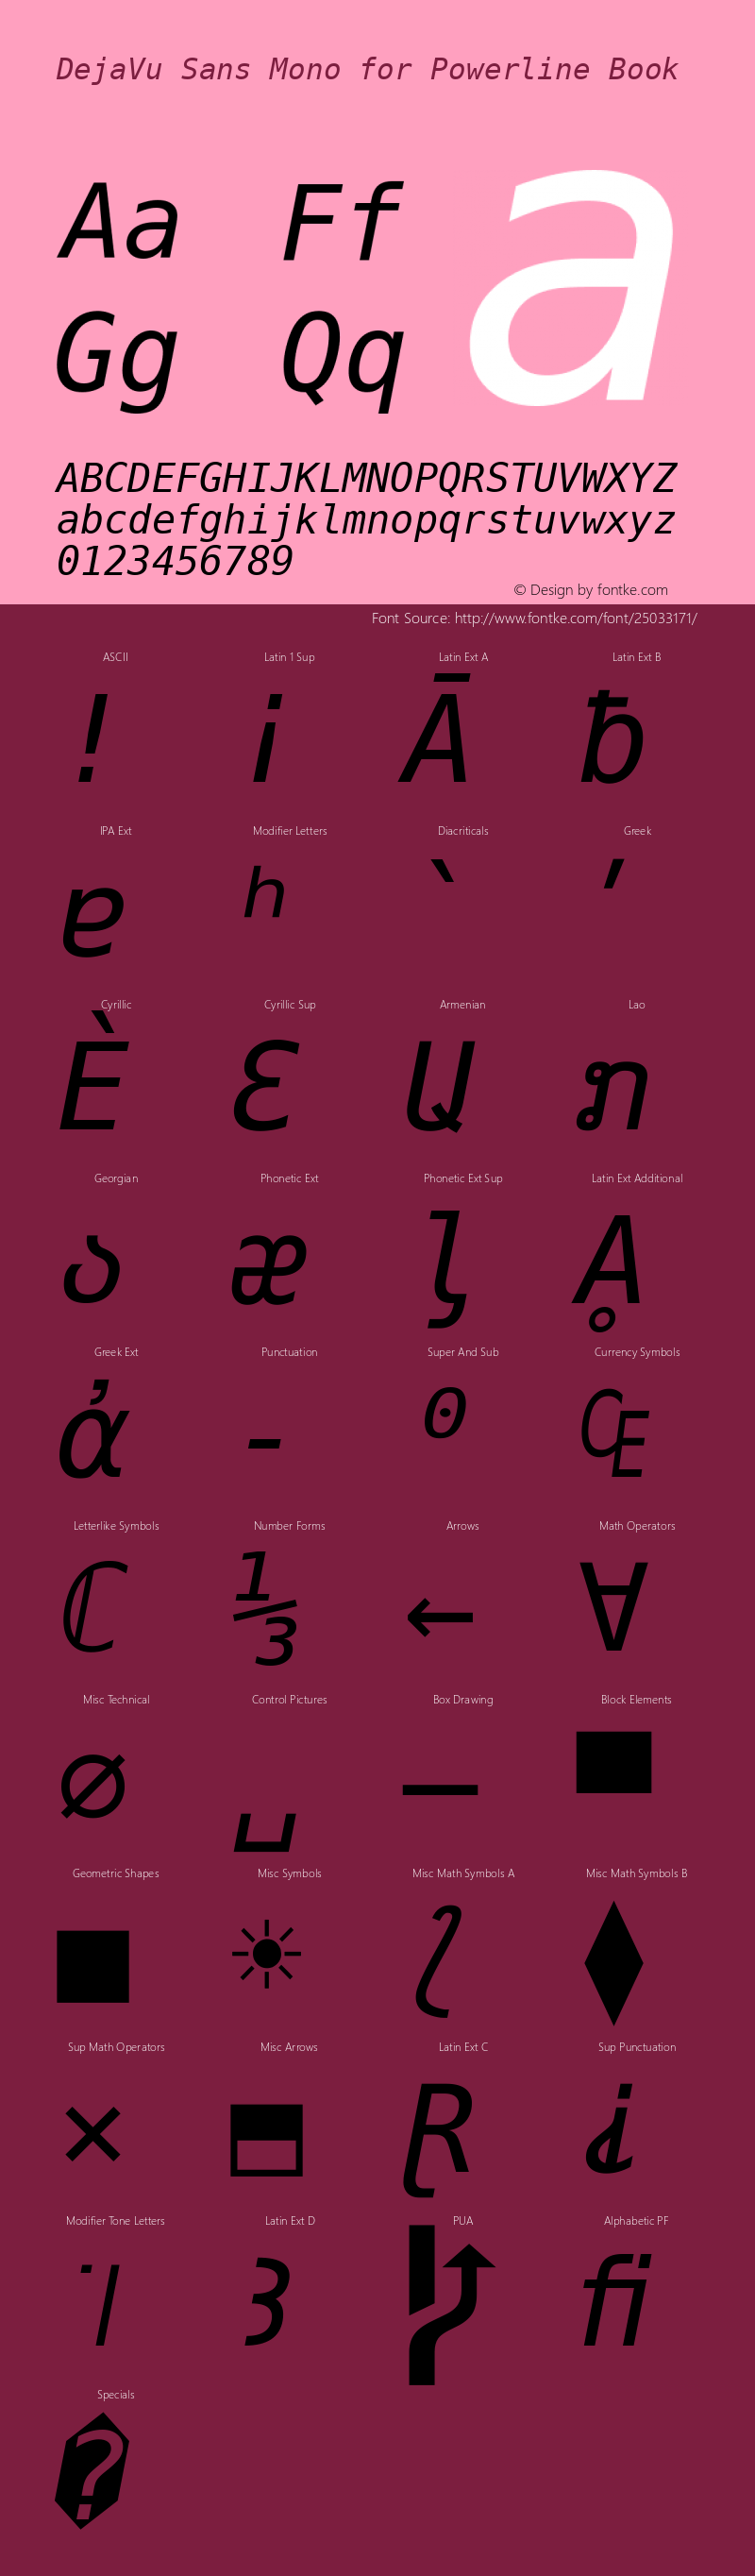 DejaVu Sans Mono Oblique for Powerline Nerd Font Plus Font Awesome Plus Octicons Windows Compatible Version 2.33图片样张